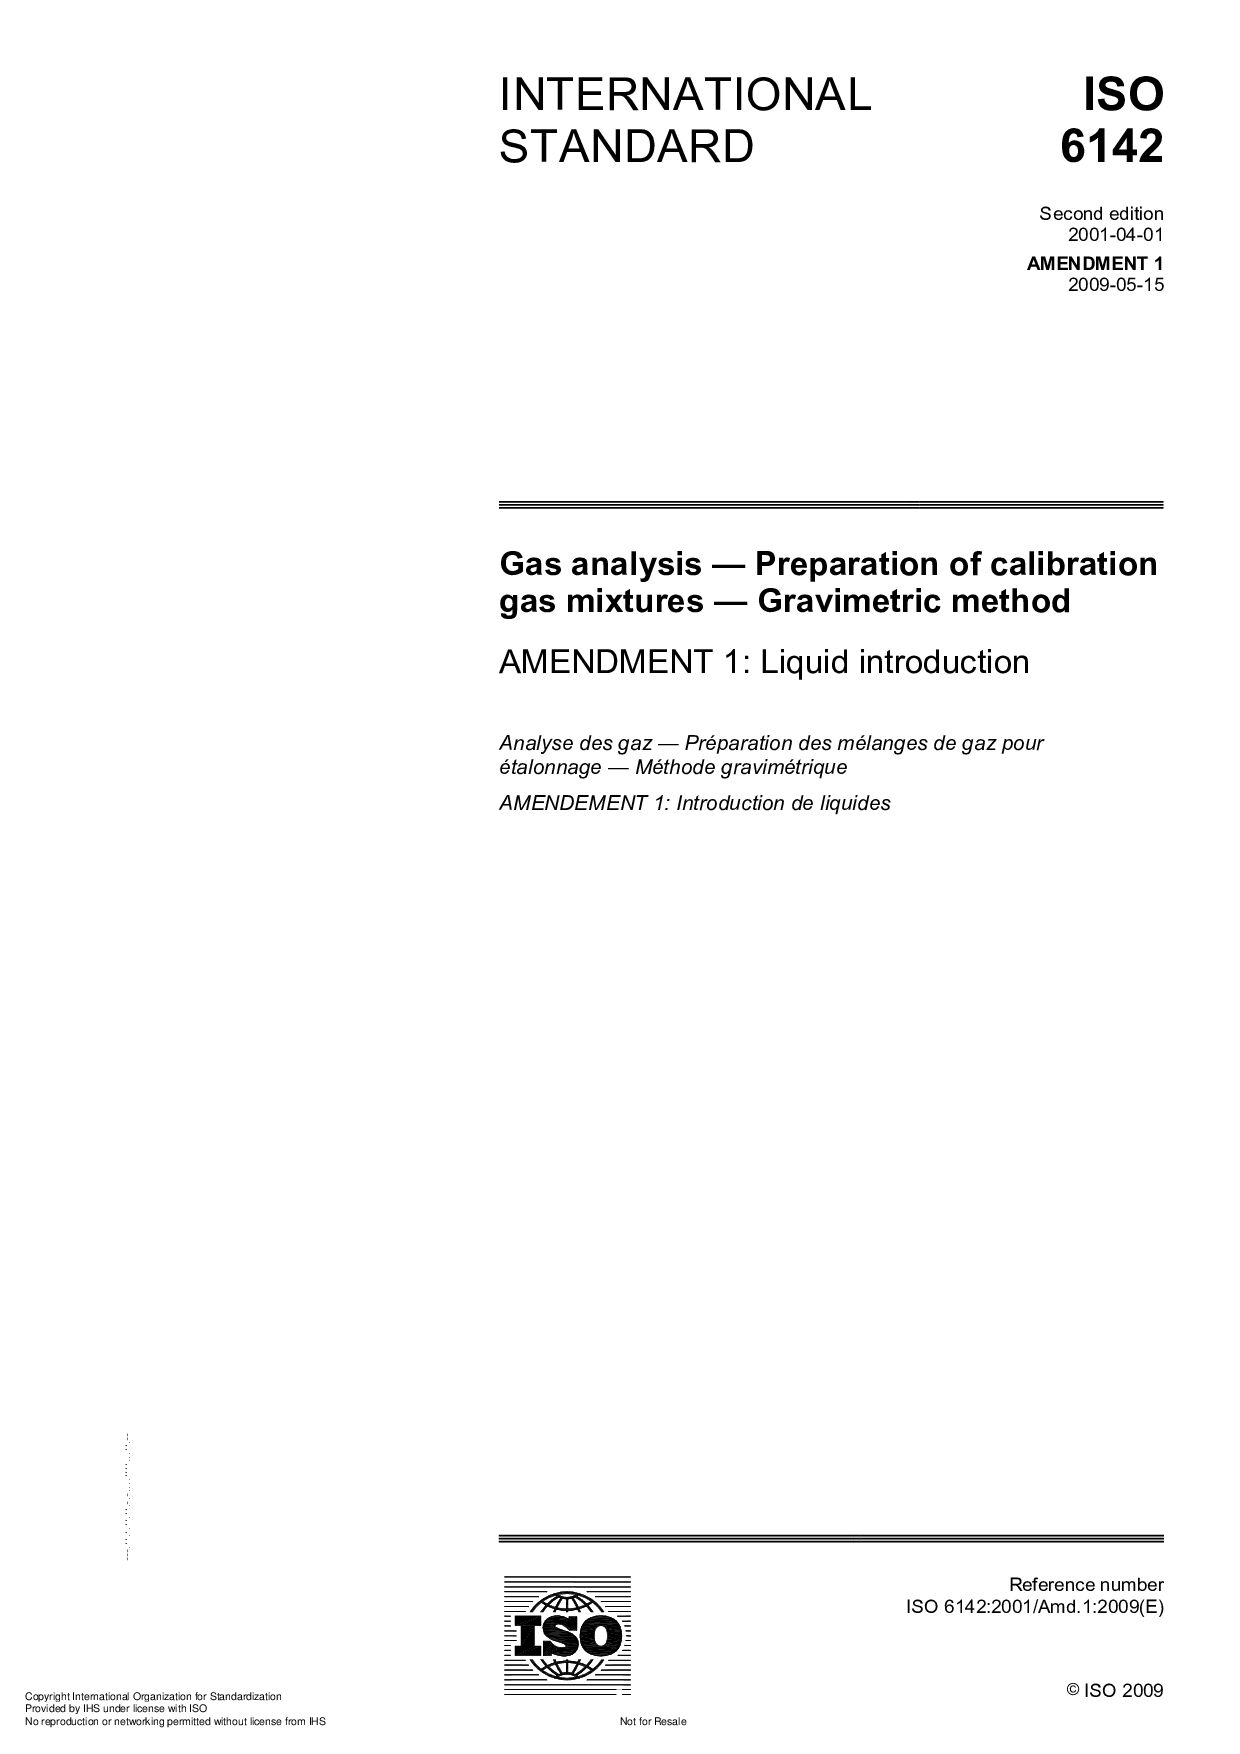 ISO 6142:2001/Amd 1:2009封面图